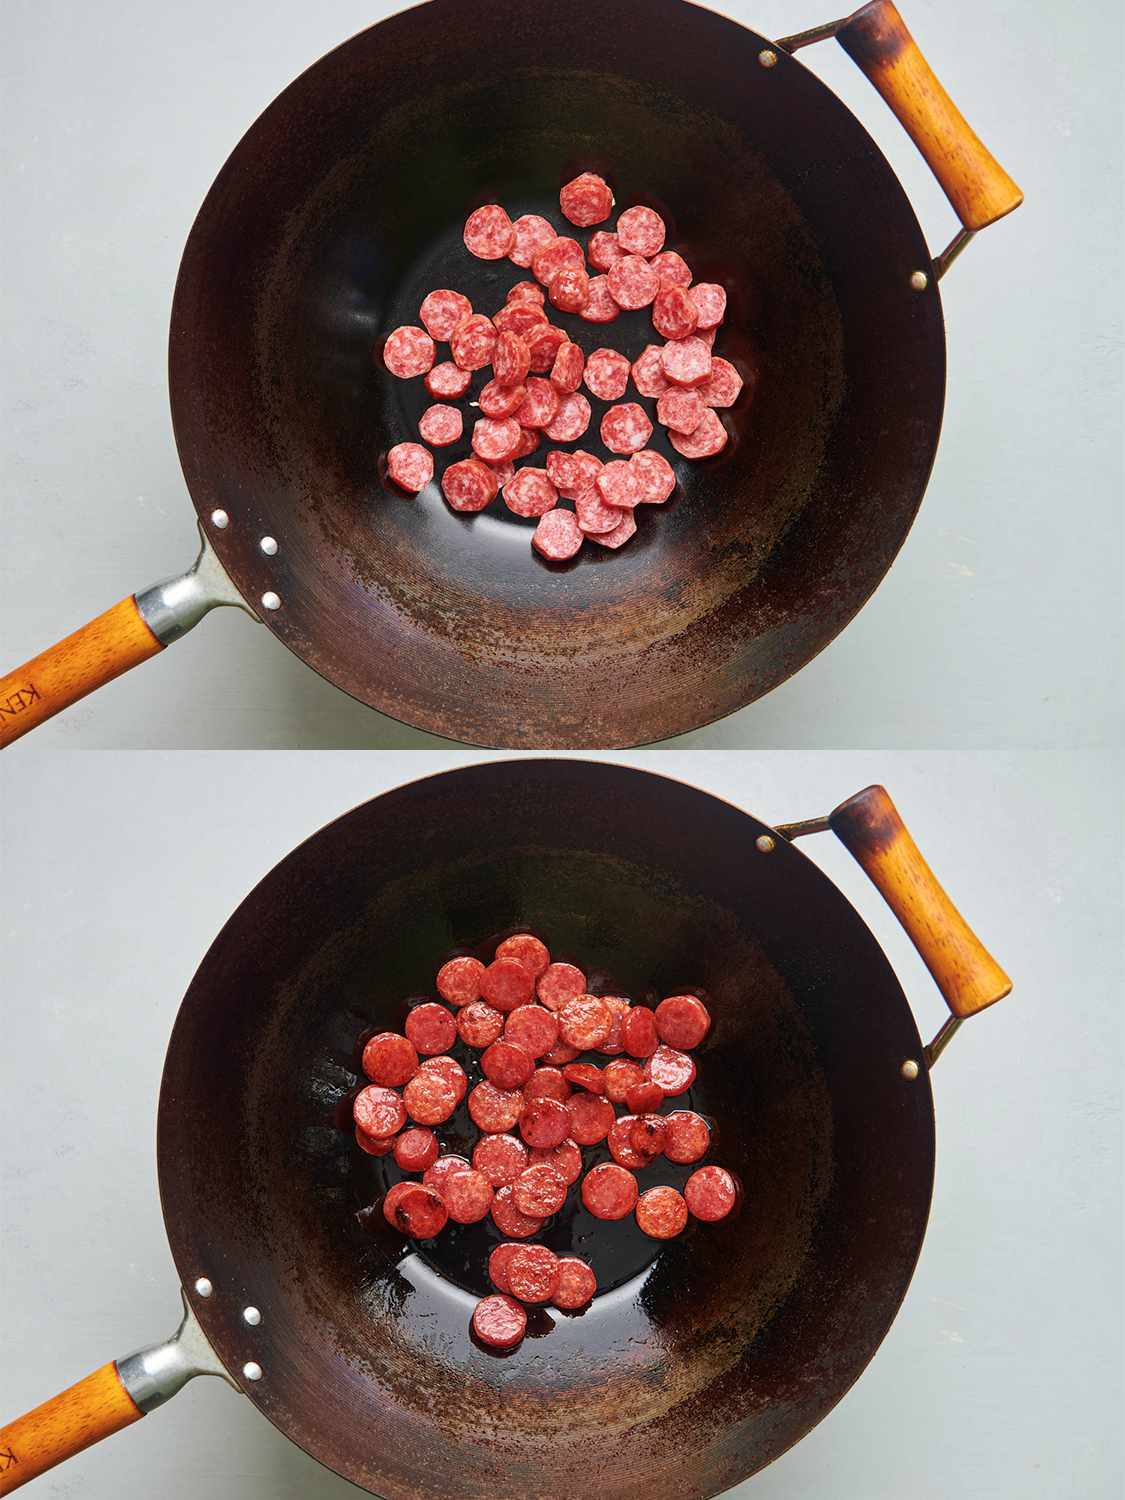 两个影像拼贴。上图显示中国香肠切片滋味碳钢锅内。下面的图片显示了香肠现在褐色的锅。